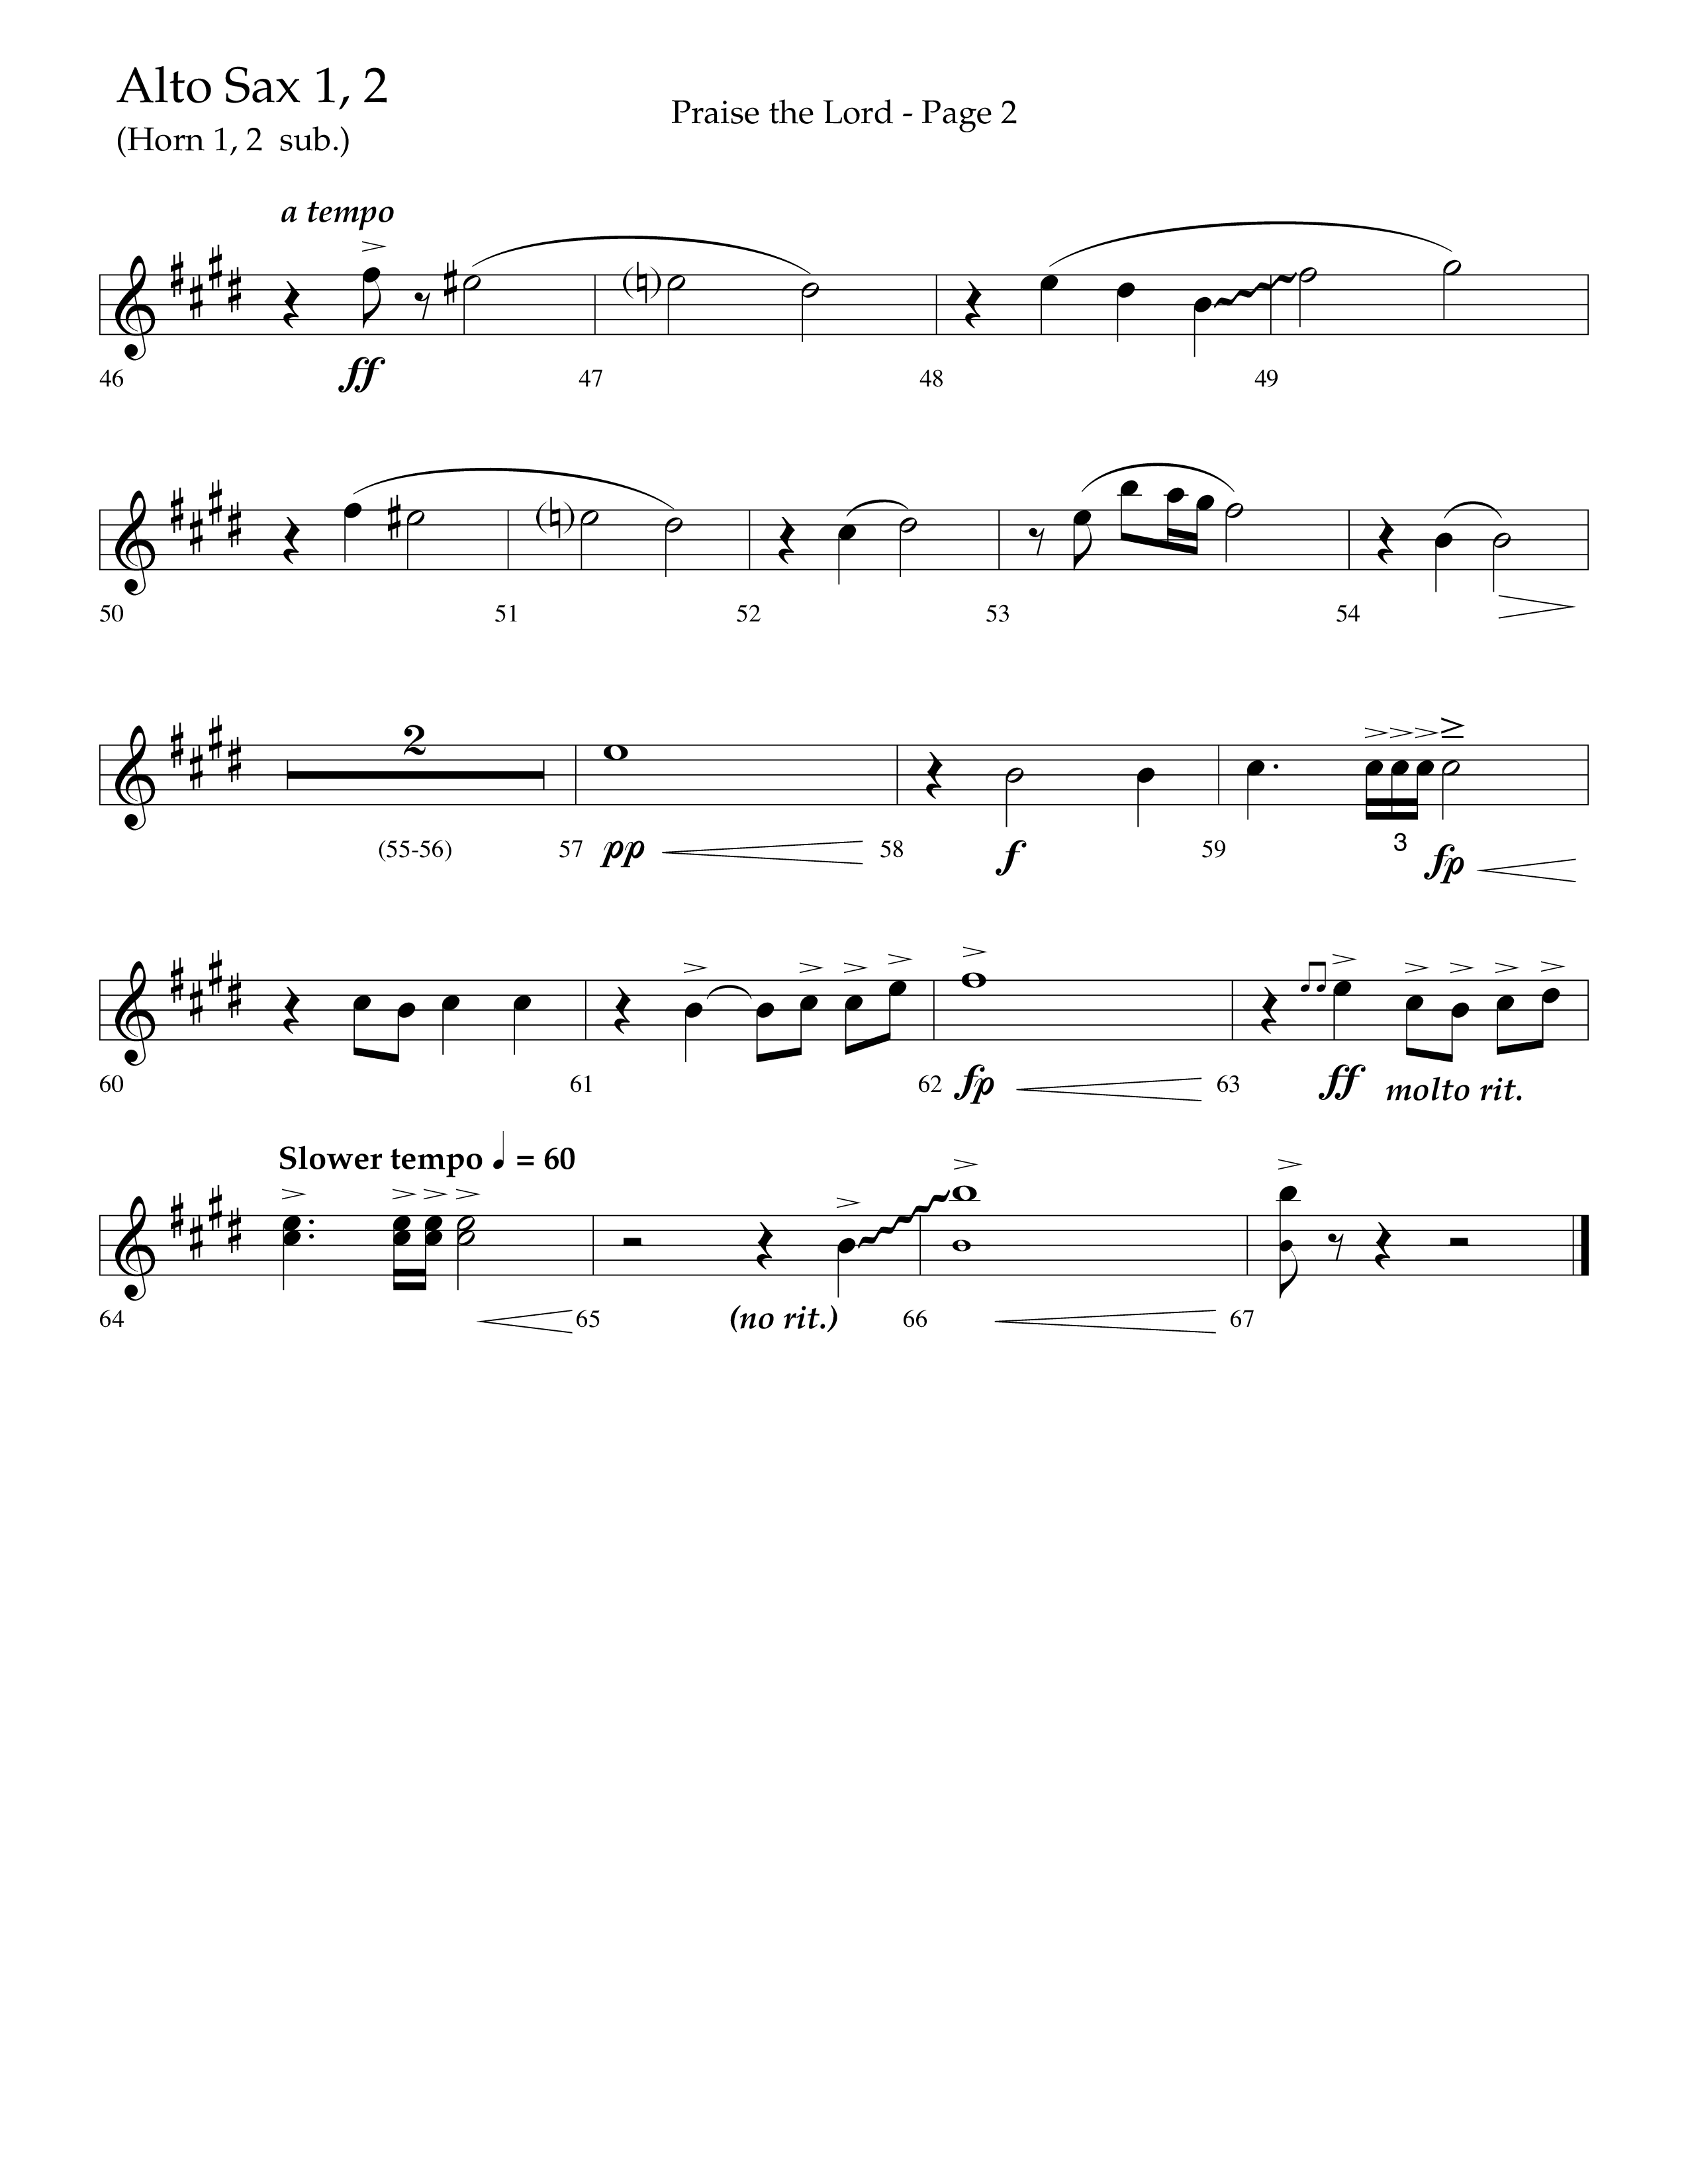 Praise The Lord (Choral Anthem SATB) Alto Sax 1/2 (Lifeway Choral / Arr. Marty Hamby)